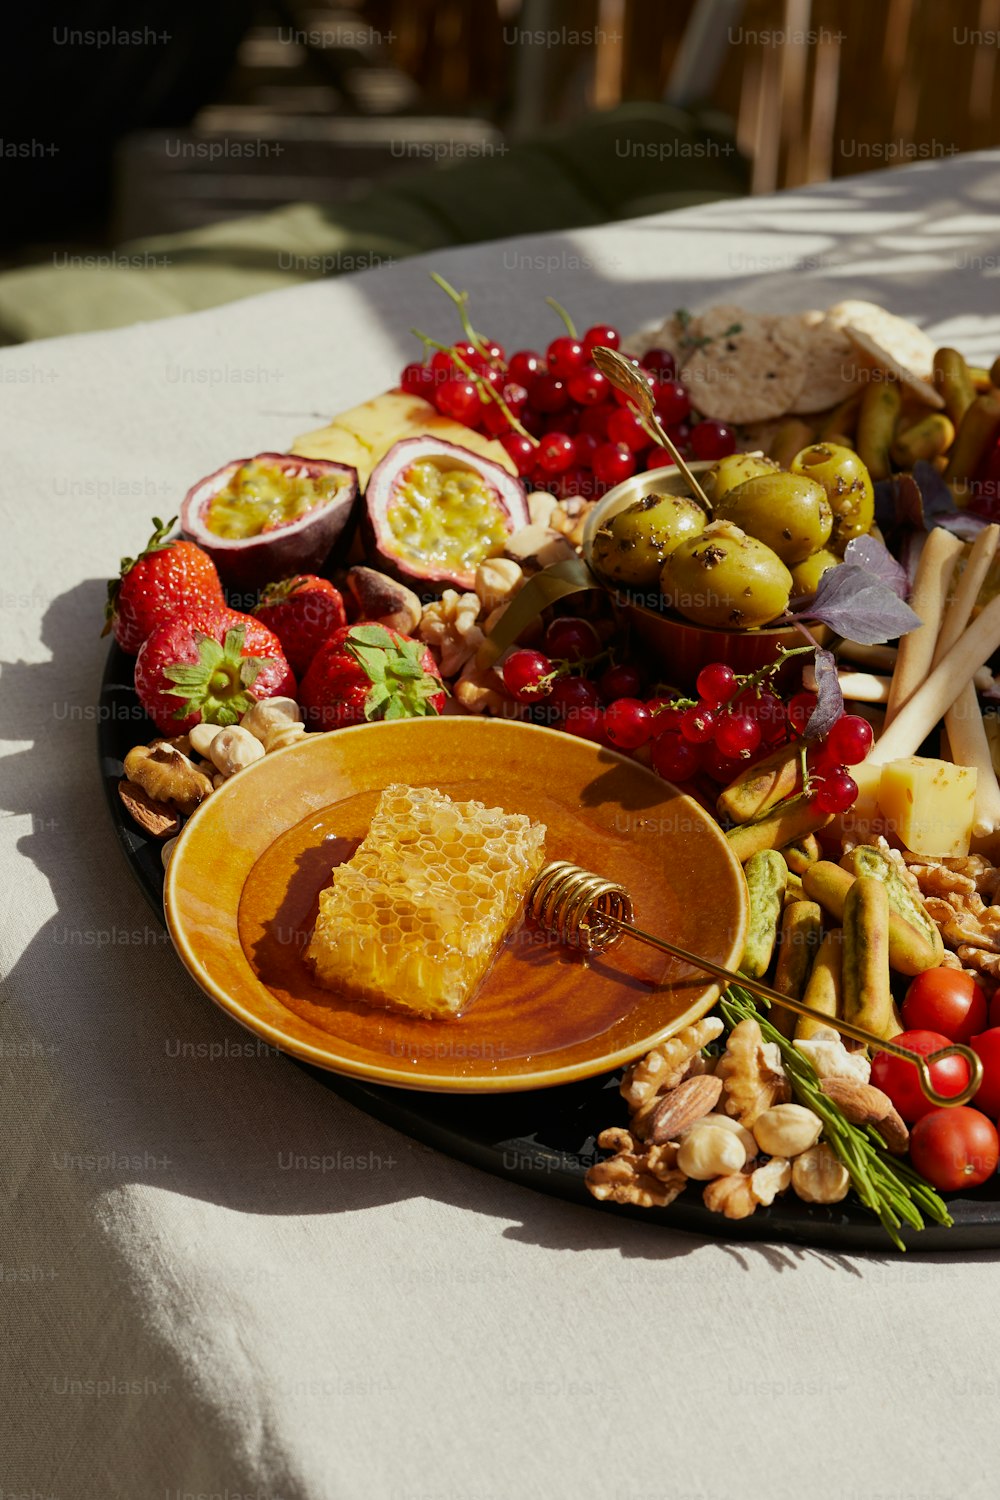 eine Platte mit Obst, Nüssen und anderen Lebensmitteln